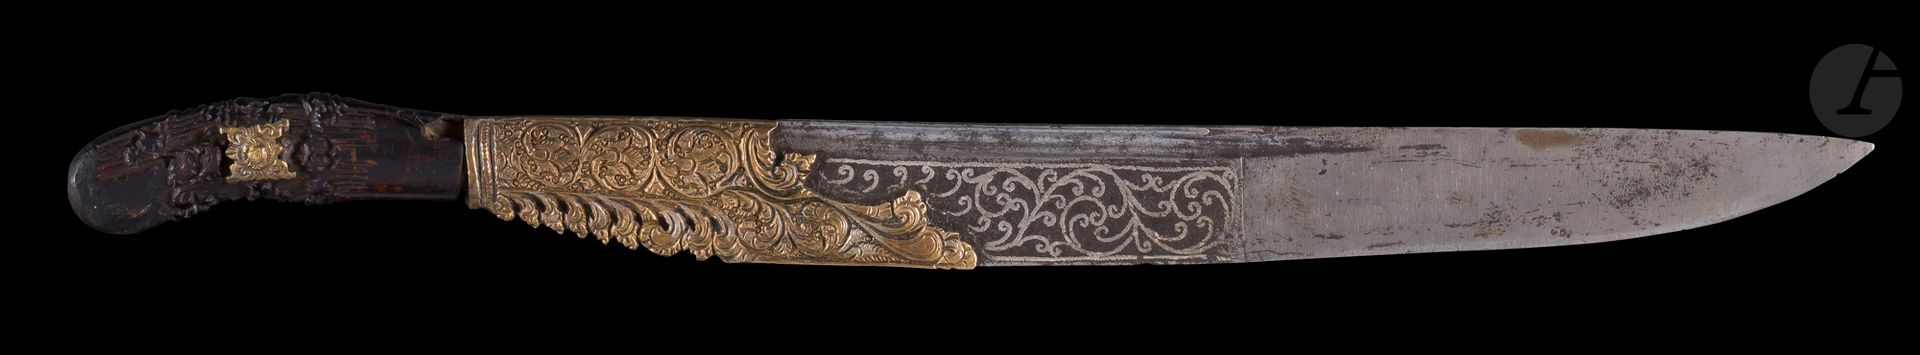 Null Piha kaetta槟榔刀，斯里兰卡，19世纪
略微弯曲的刀身，带有钢制沟槽，部分镶嵌有银制植物卷轴，鞋跟由镀金铜合金制成，有模塑和凿刻的棕榈卷轴装&hellip;